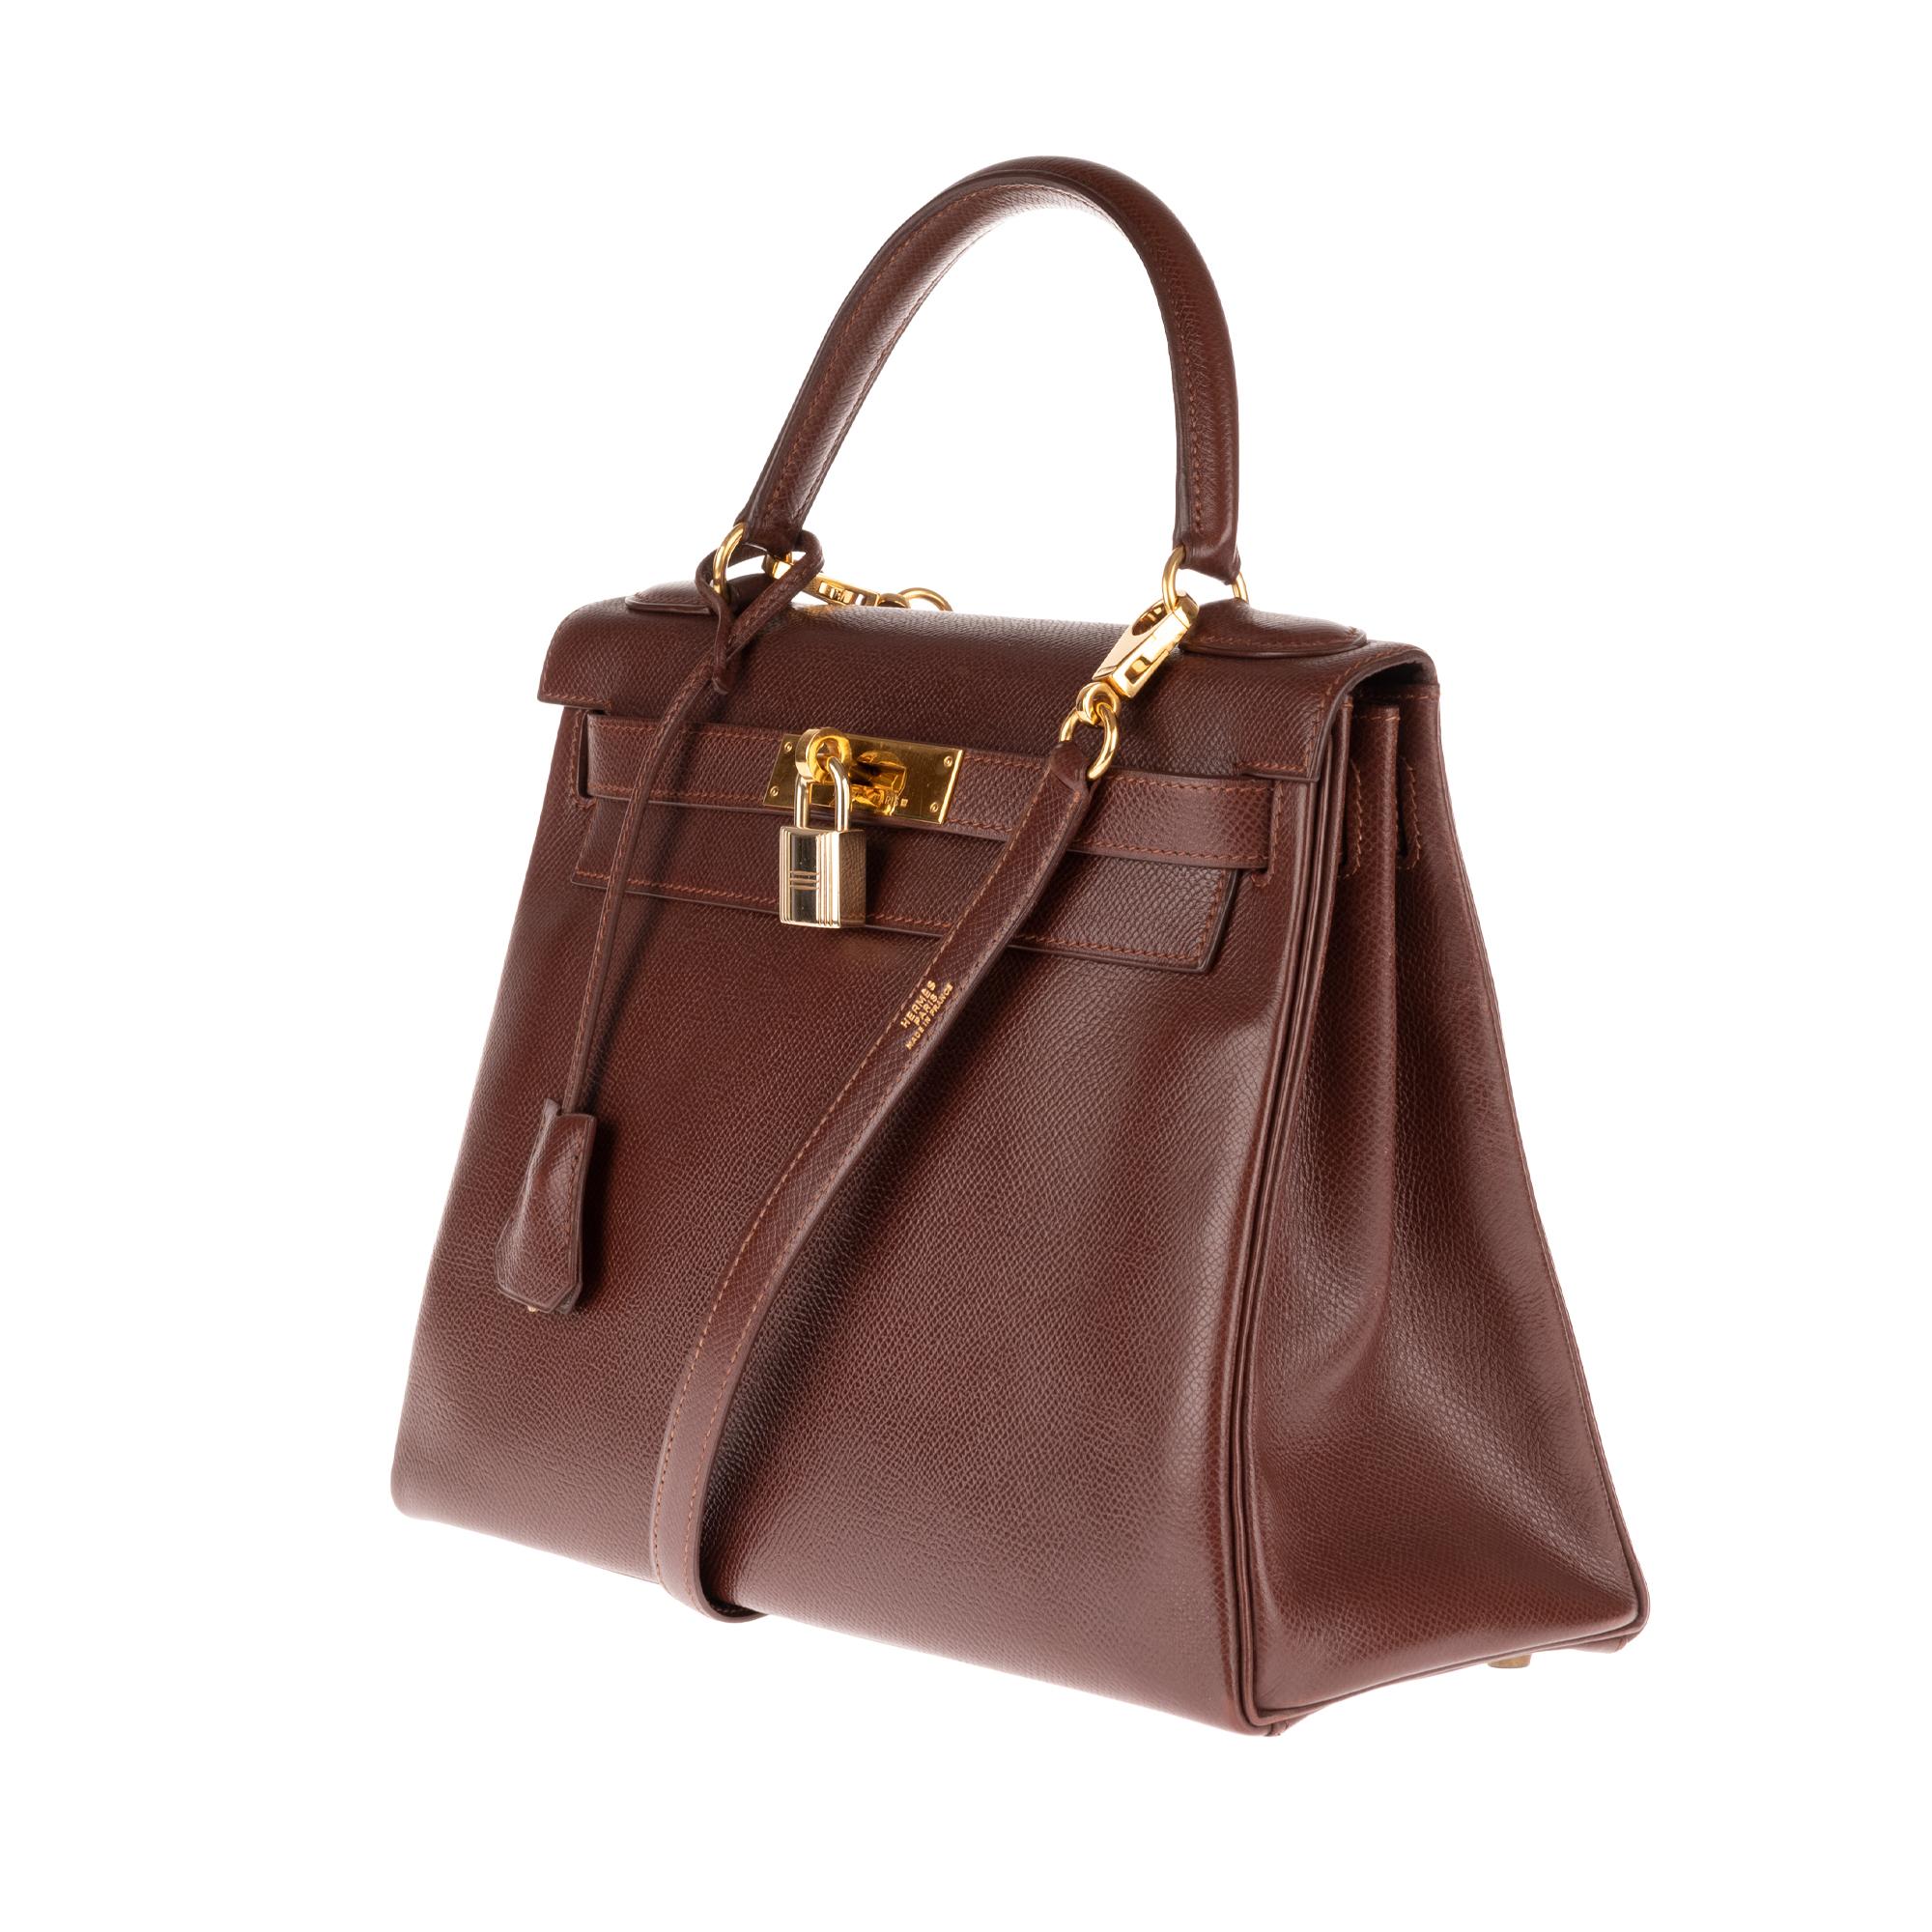 Hermès Kelly 28 Handtasche aus Courchevel Brown-Leder mit Riemen:: goldene Hardware! (Braun)